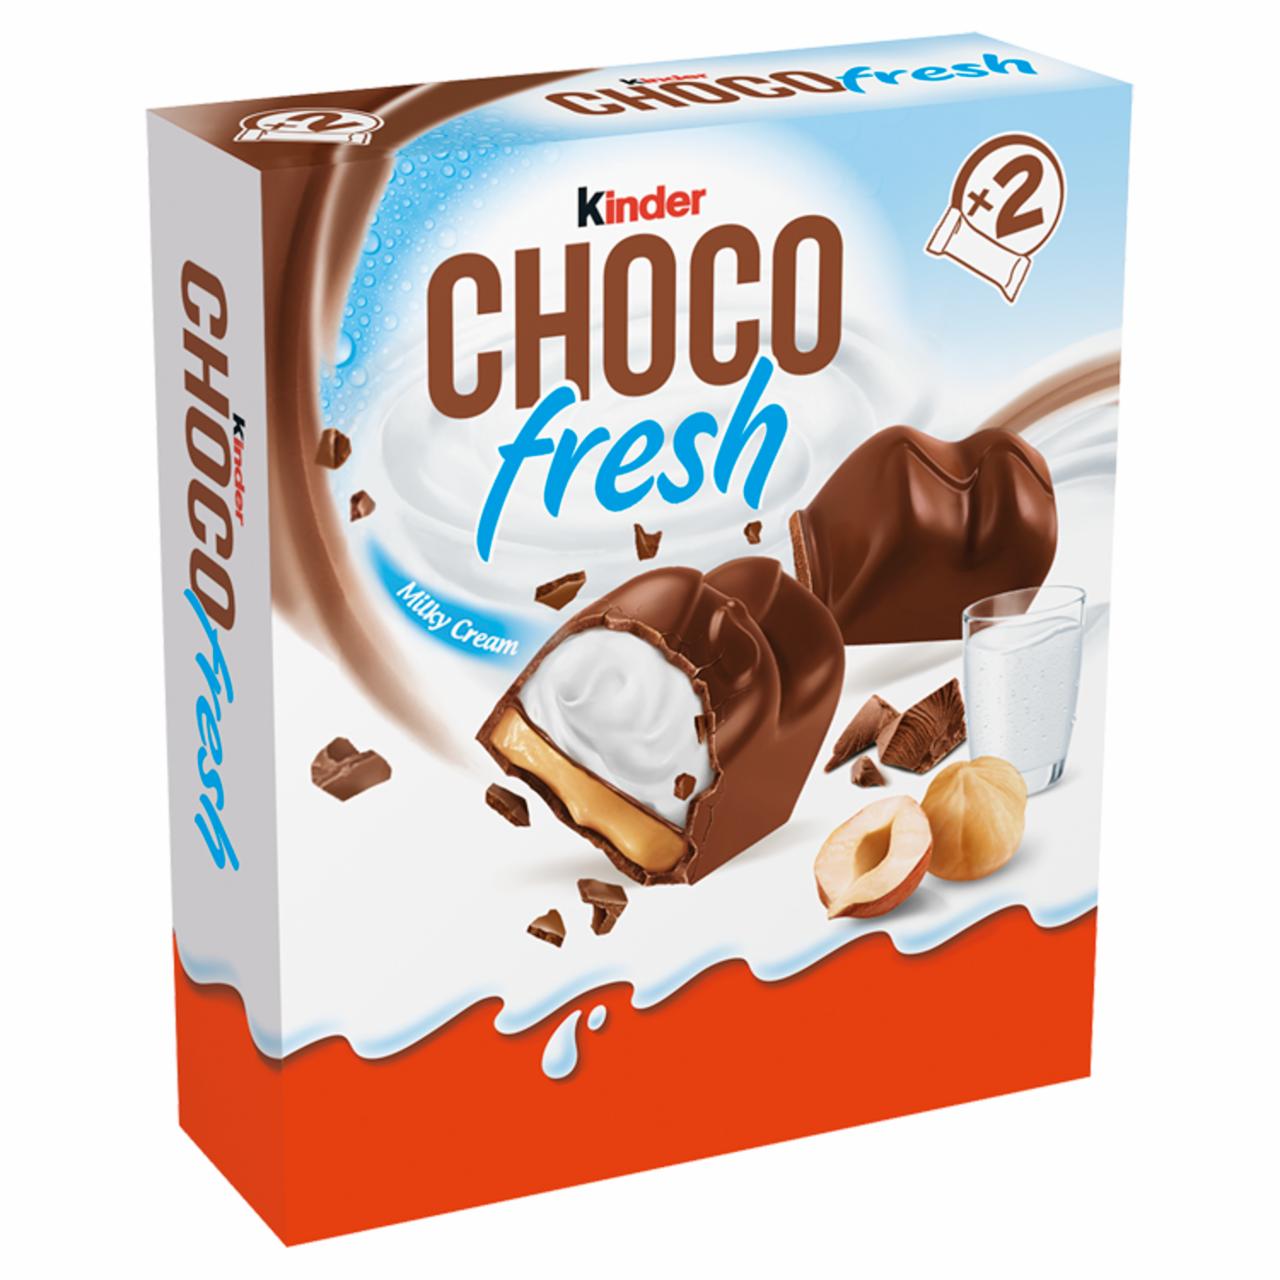 Képek - Choco fresh tejes és mogyorós krémmel töltött tejcsokoládé 2 db Kinder